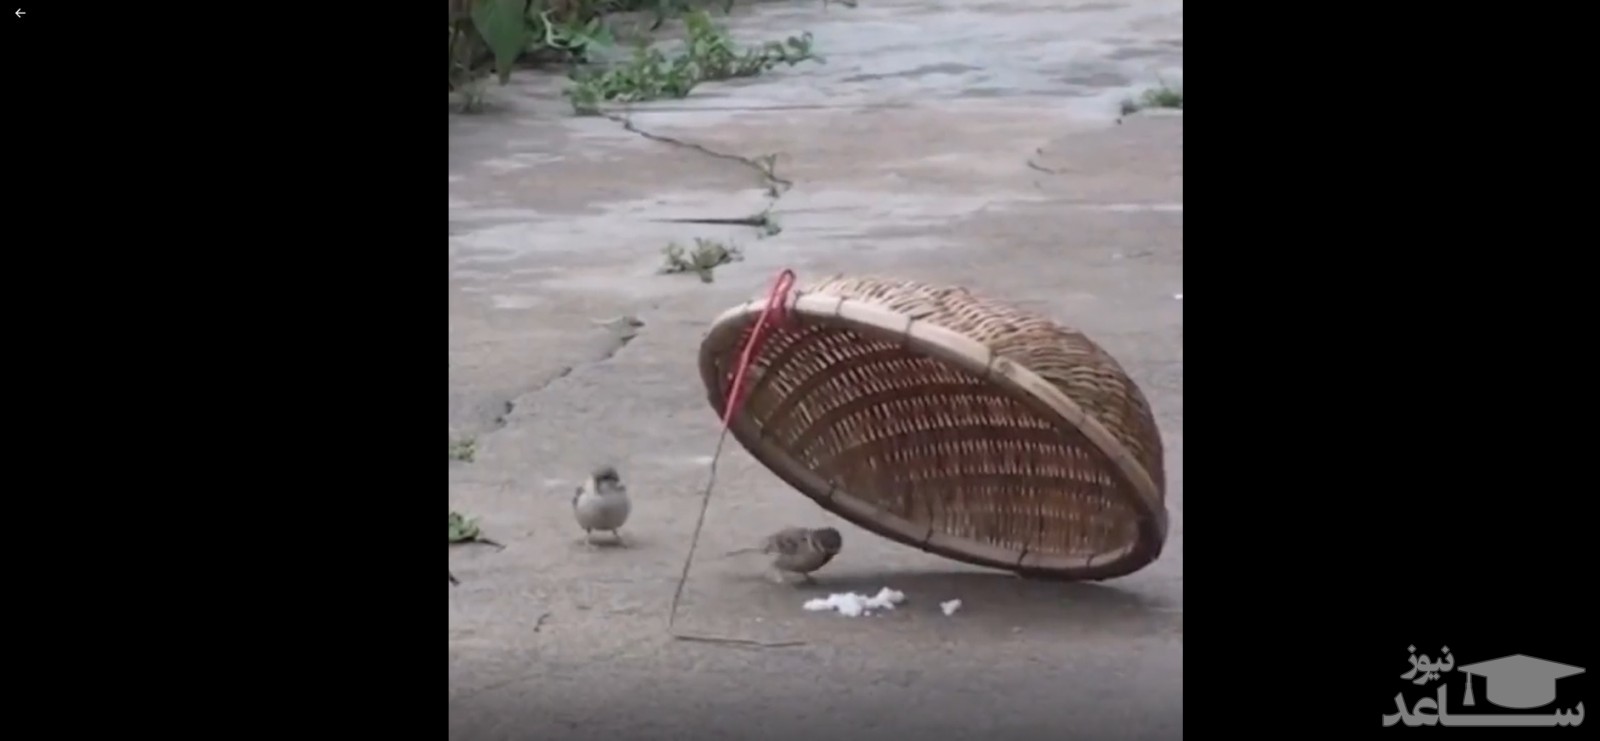 (فیلم) پرنده ای که برای عشقش به استقبال خطر رفت